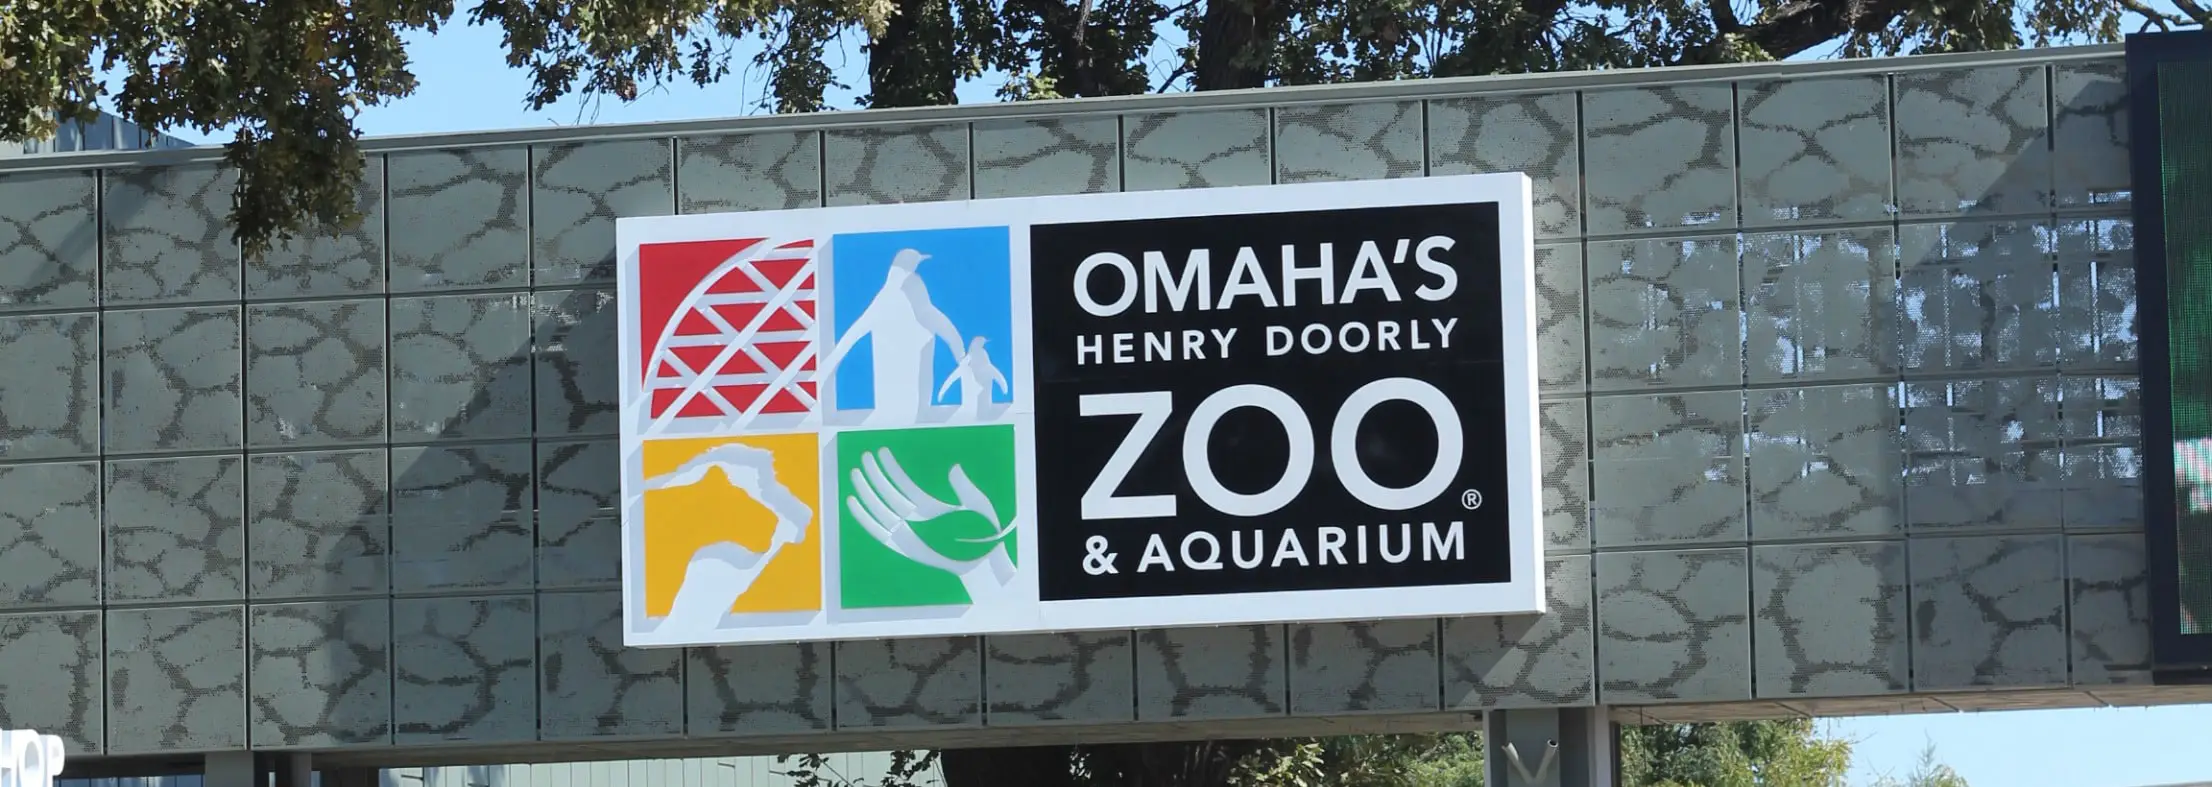 Henry Doorly Zoo in Omaha Nebraska